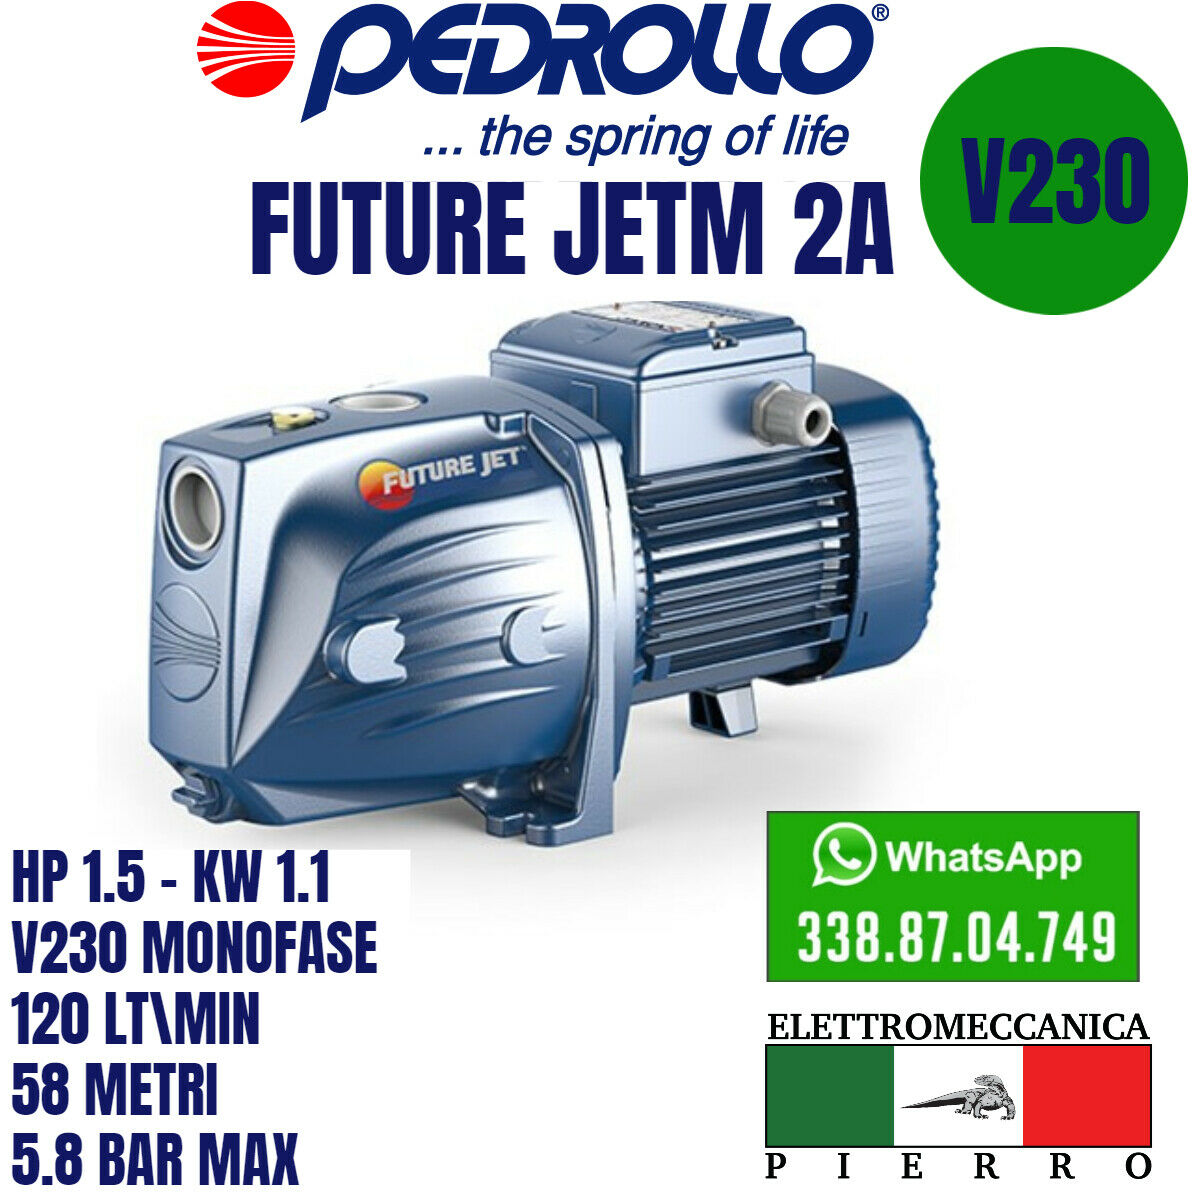 Elettropompa Pompa Autodescante PEDROLLO Future JETm 2A-2B-2C INOX V230 Monofase  Logo Elettromeccanica Pierro Elettromeccanica Express Assistenza Future JETM 2A HP1,5 - KW 1,1 120LT/MIN 58 Metri 5,8 BAR MAX (2693740)